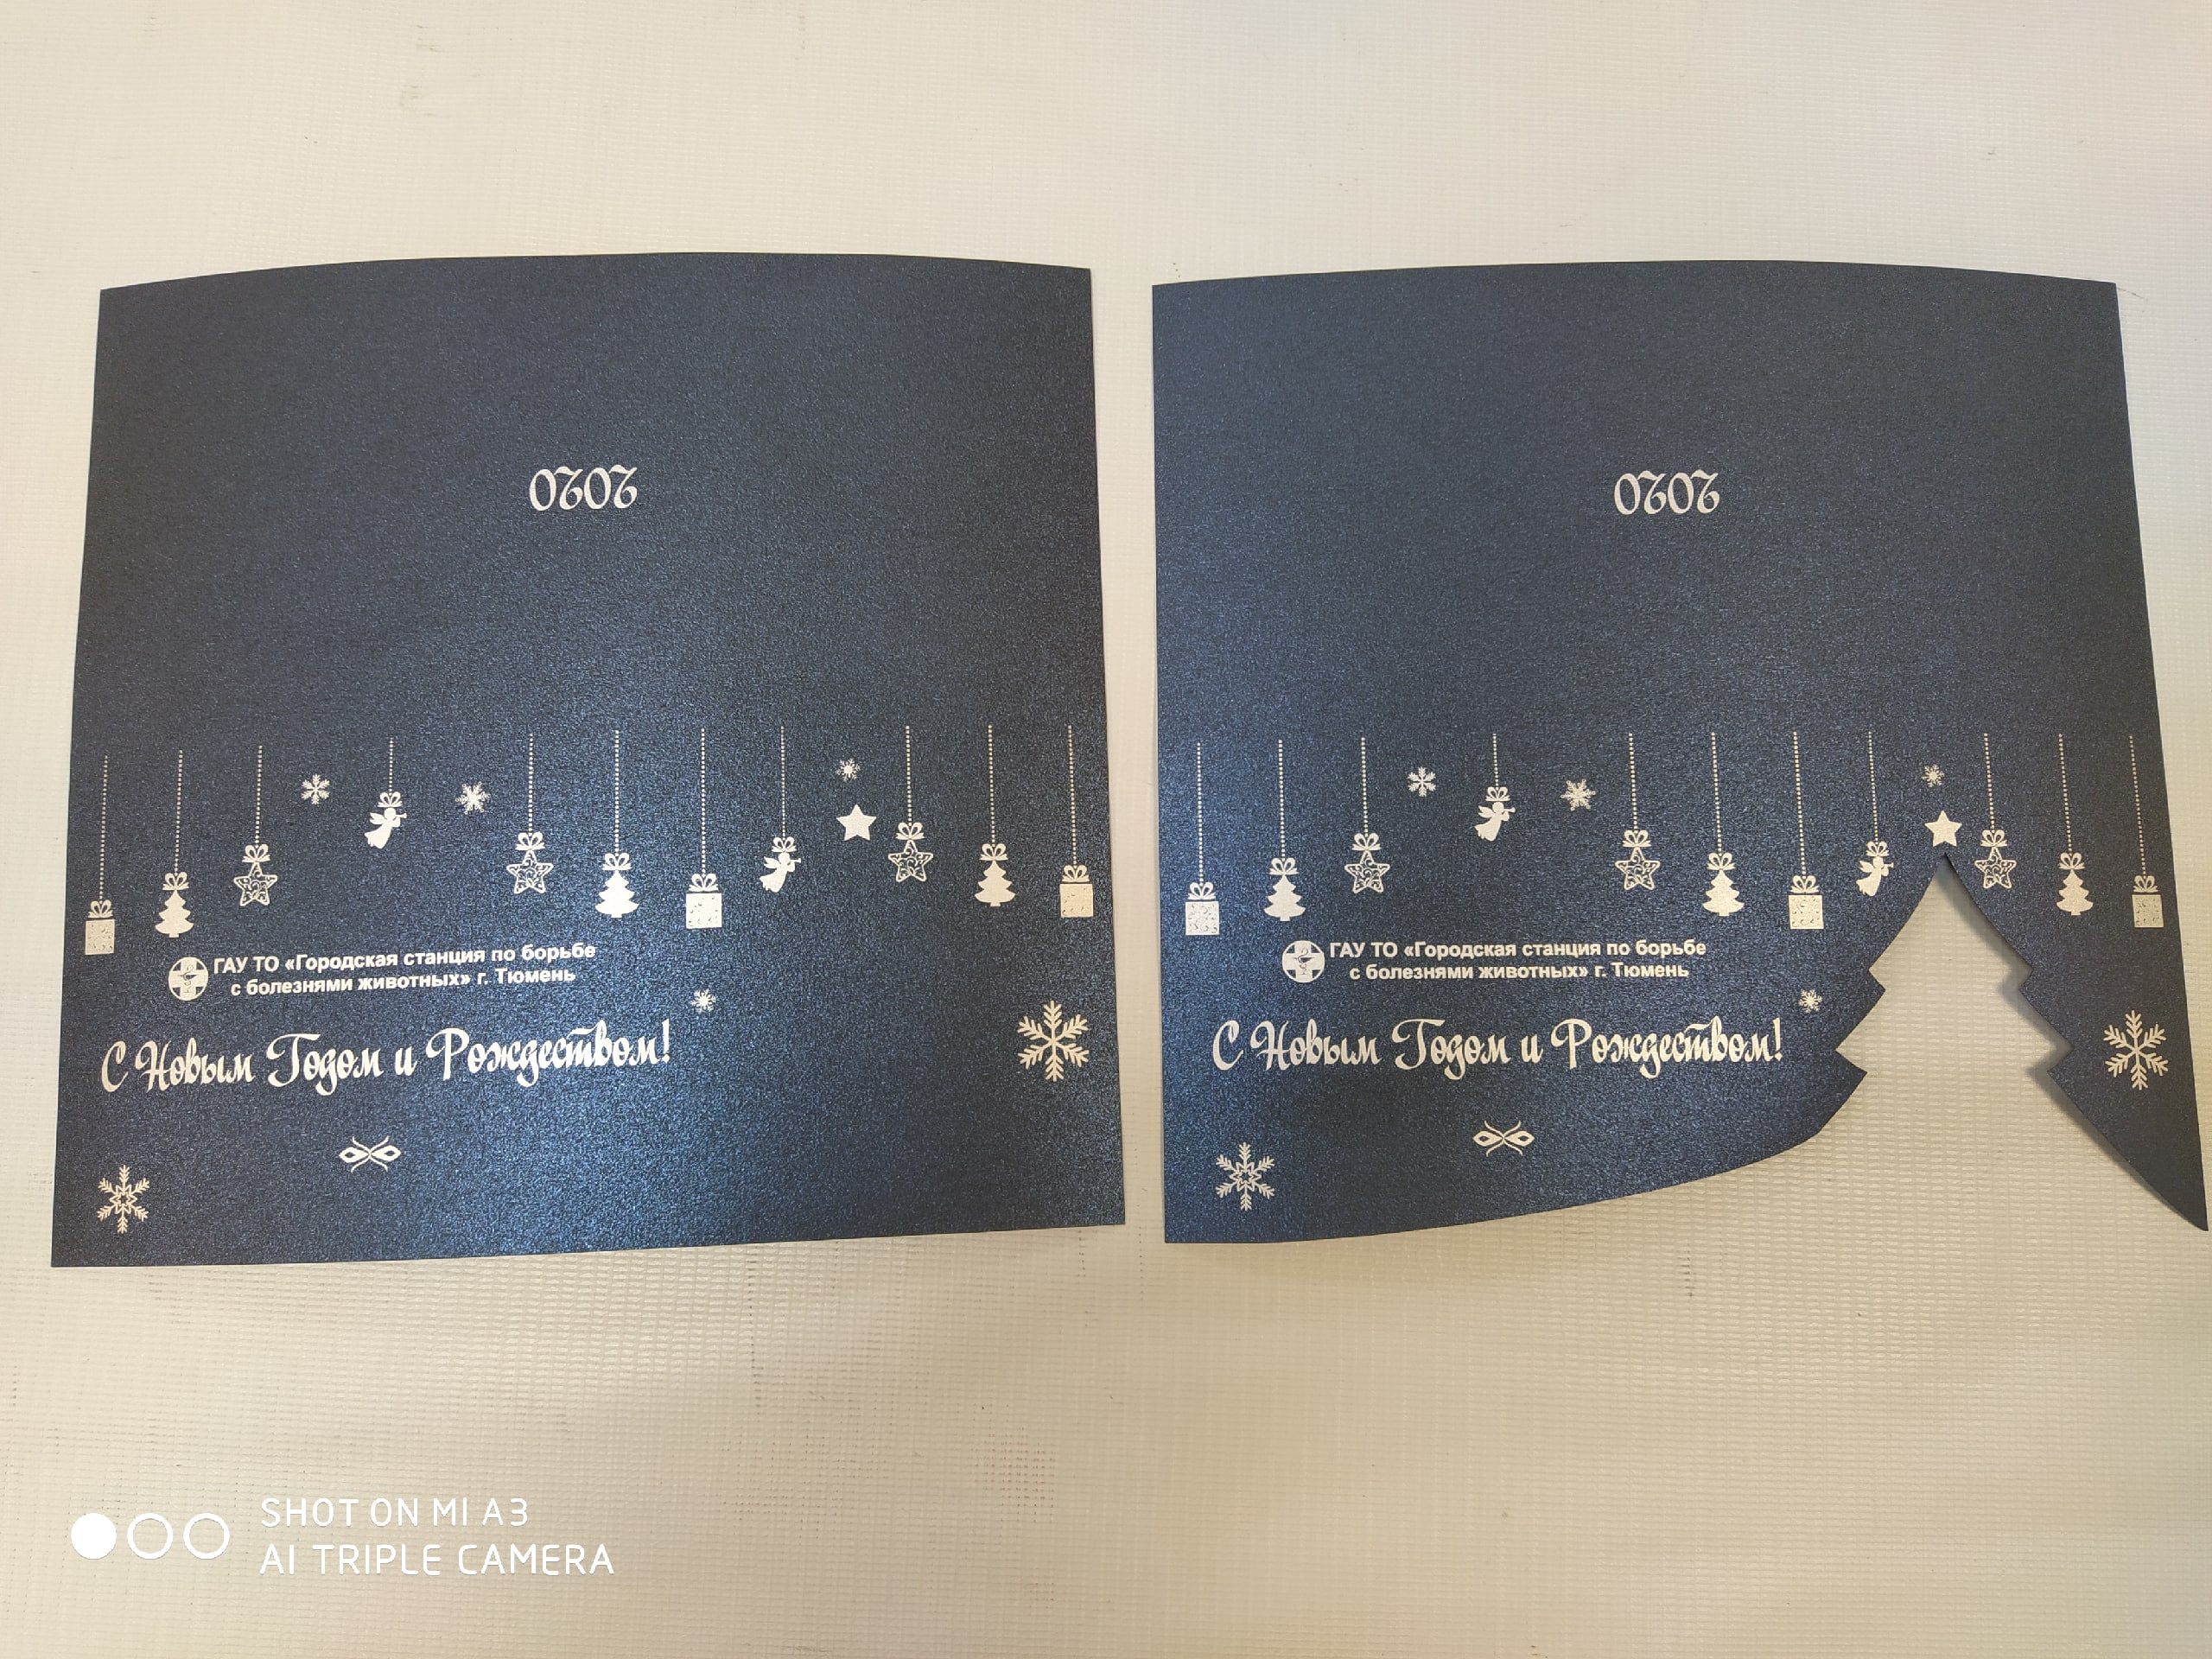 Cartão postal personalizado com corte a laser